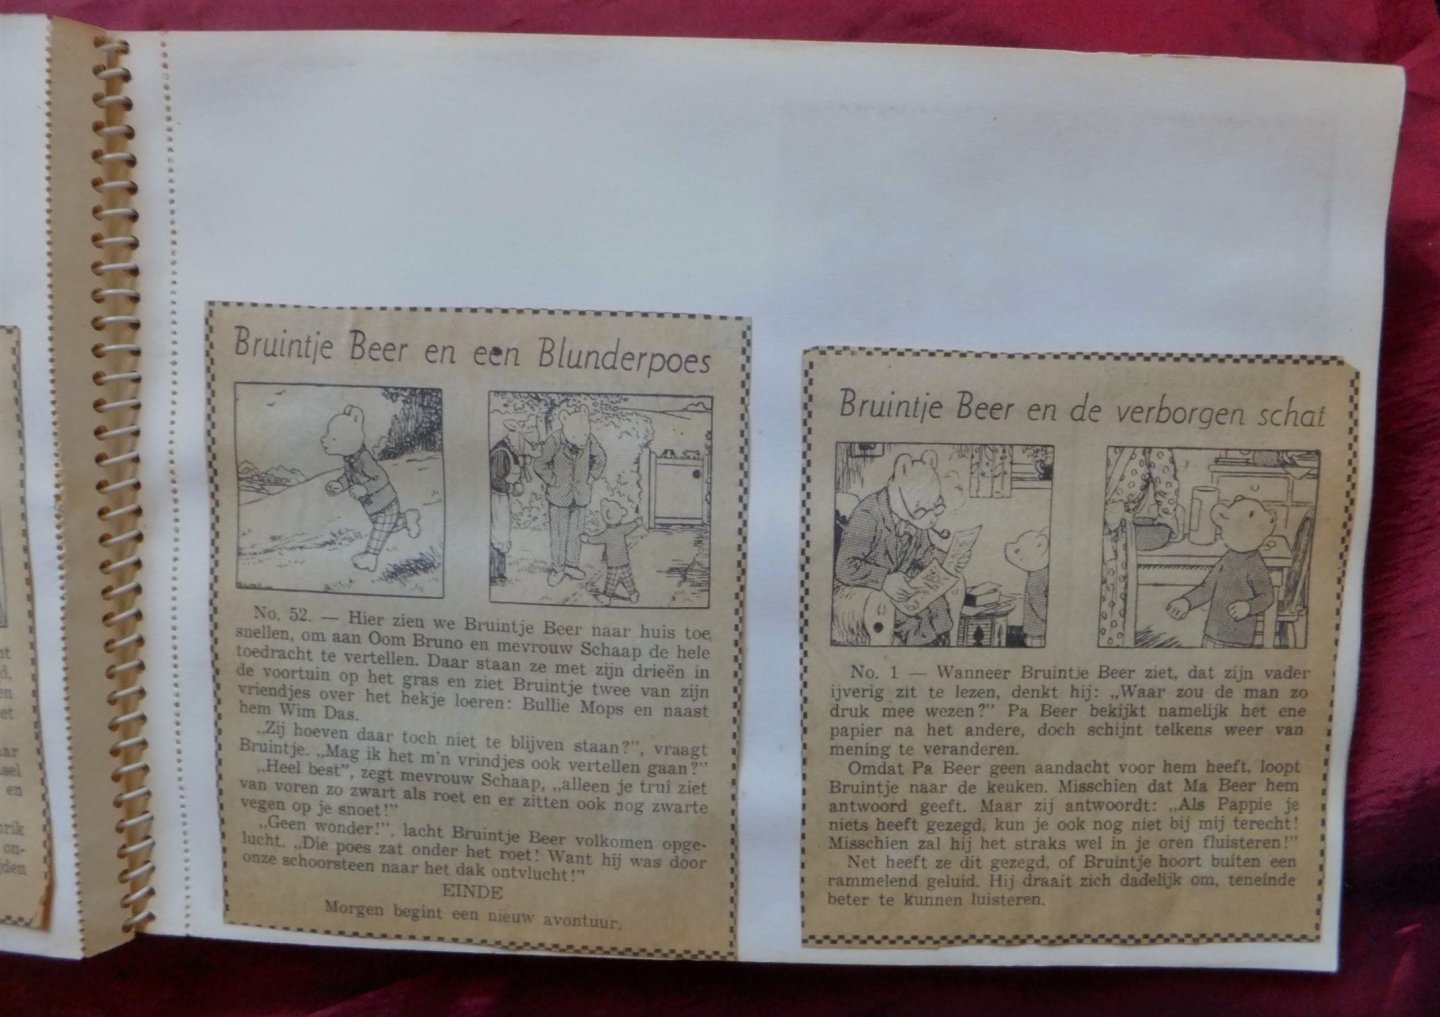 Tourtel, Mary - Bruintje Beer Plakboek en plakboek met Bruintje Beer en de blunderpoes & de verborgen schat